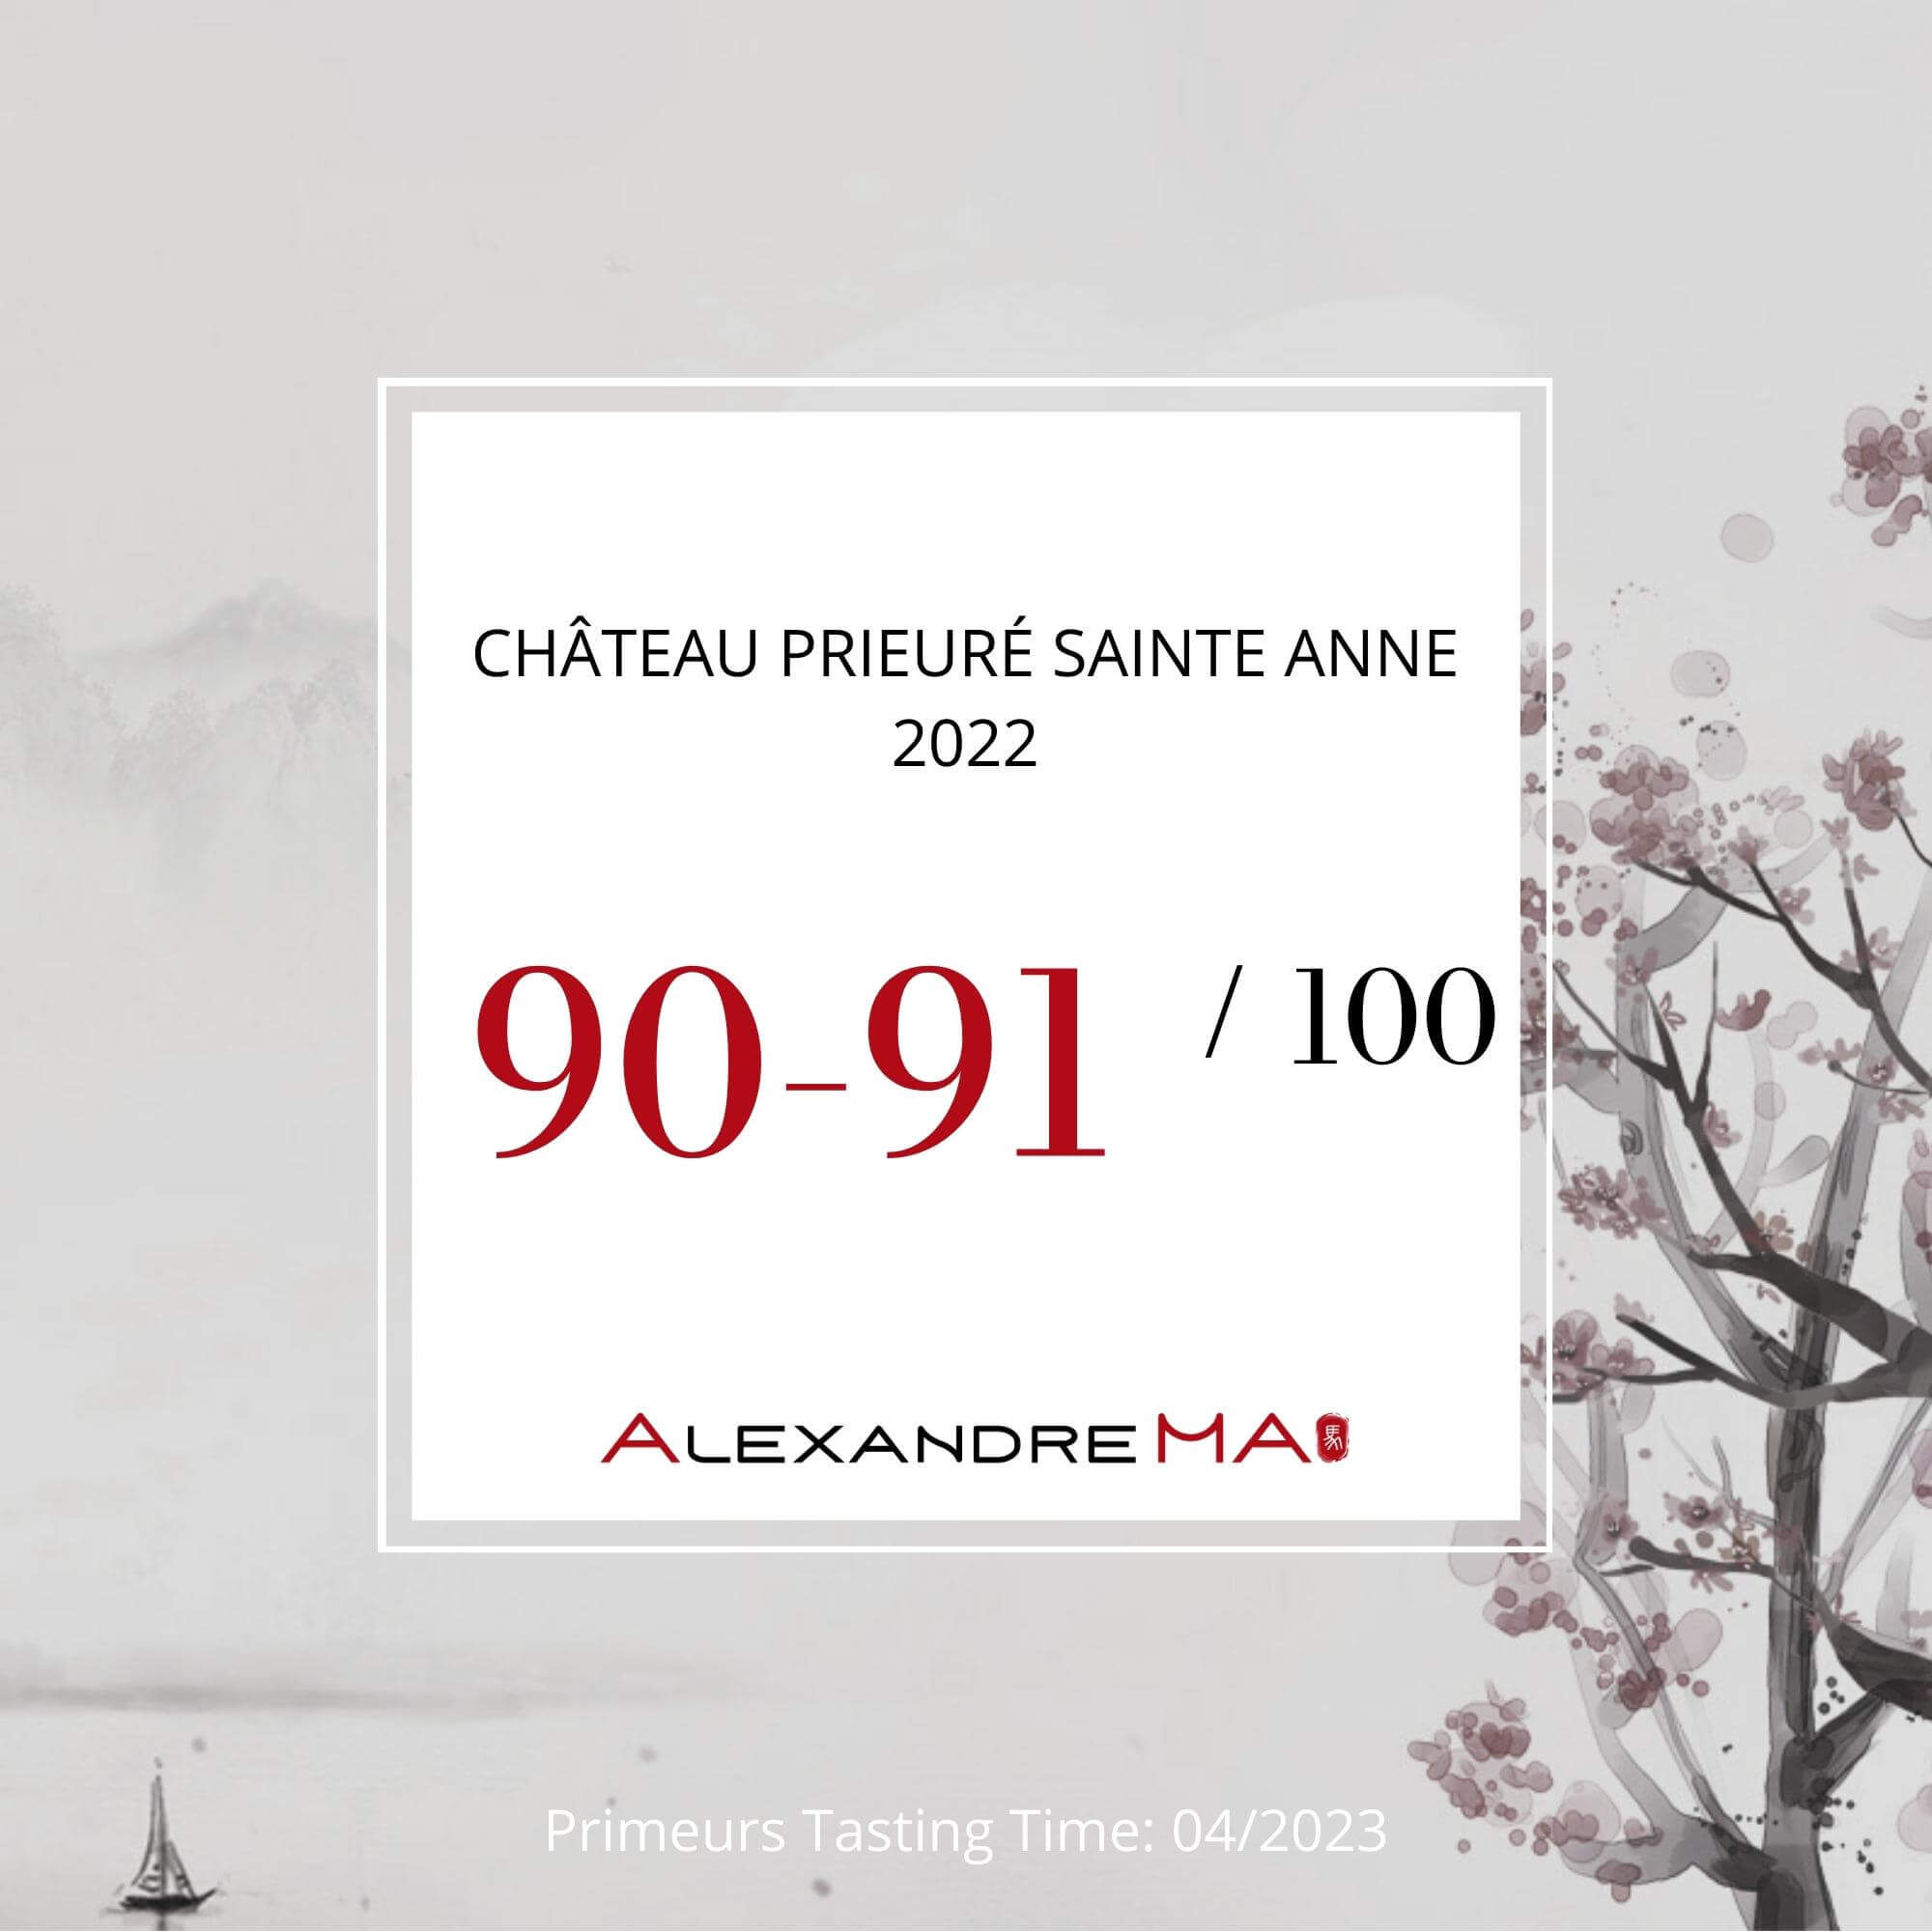 Château Prieuré Sainte Anne 2022 Primeurs - Alexandre MA